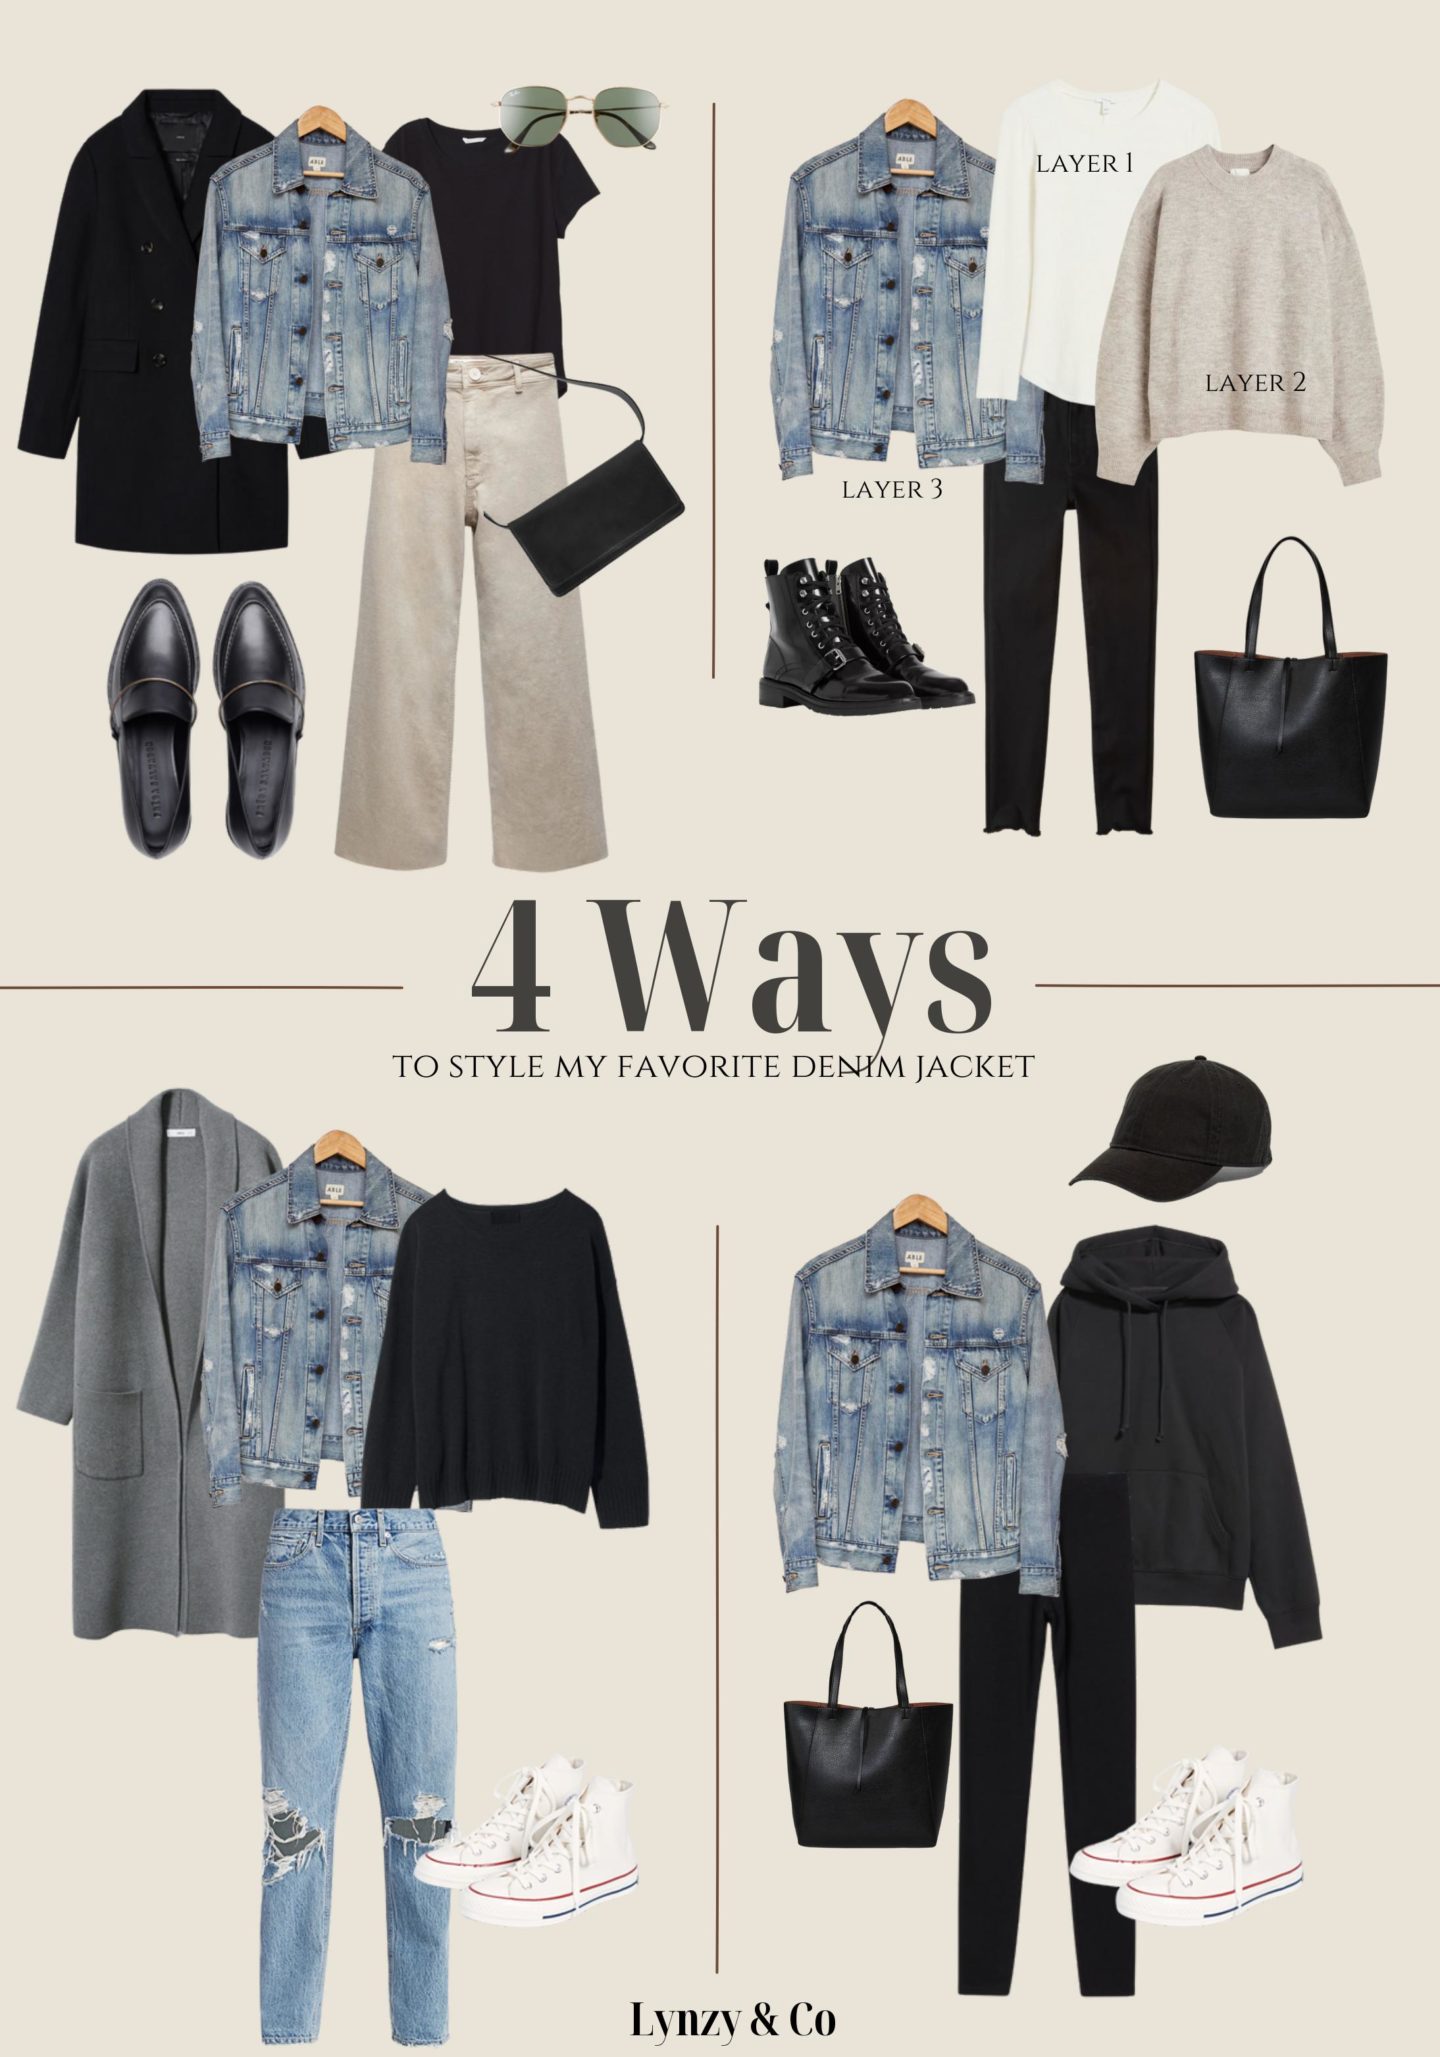 4 Ways To Style a Denim Jacket